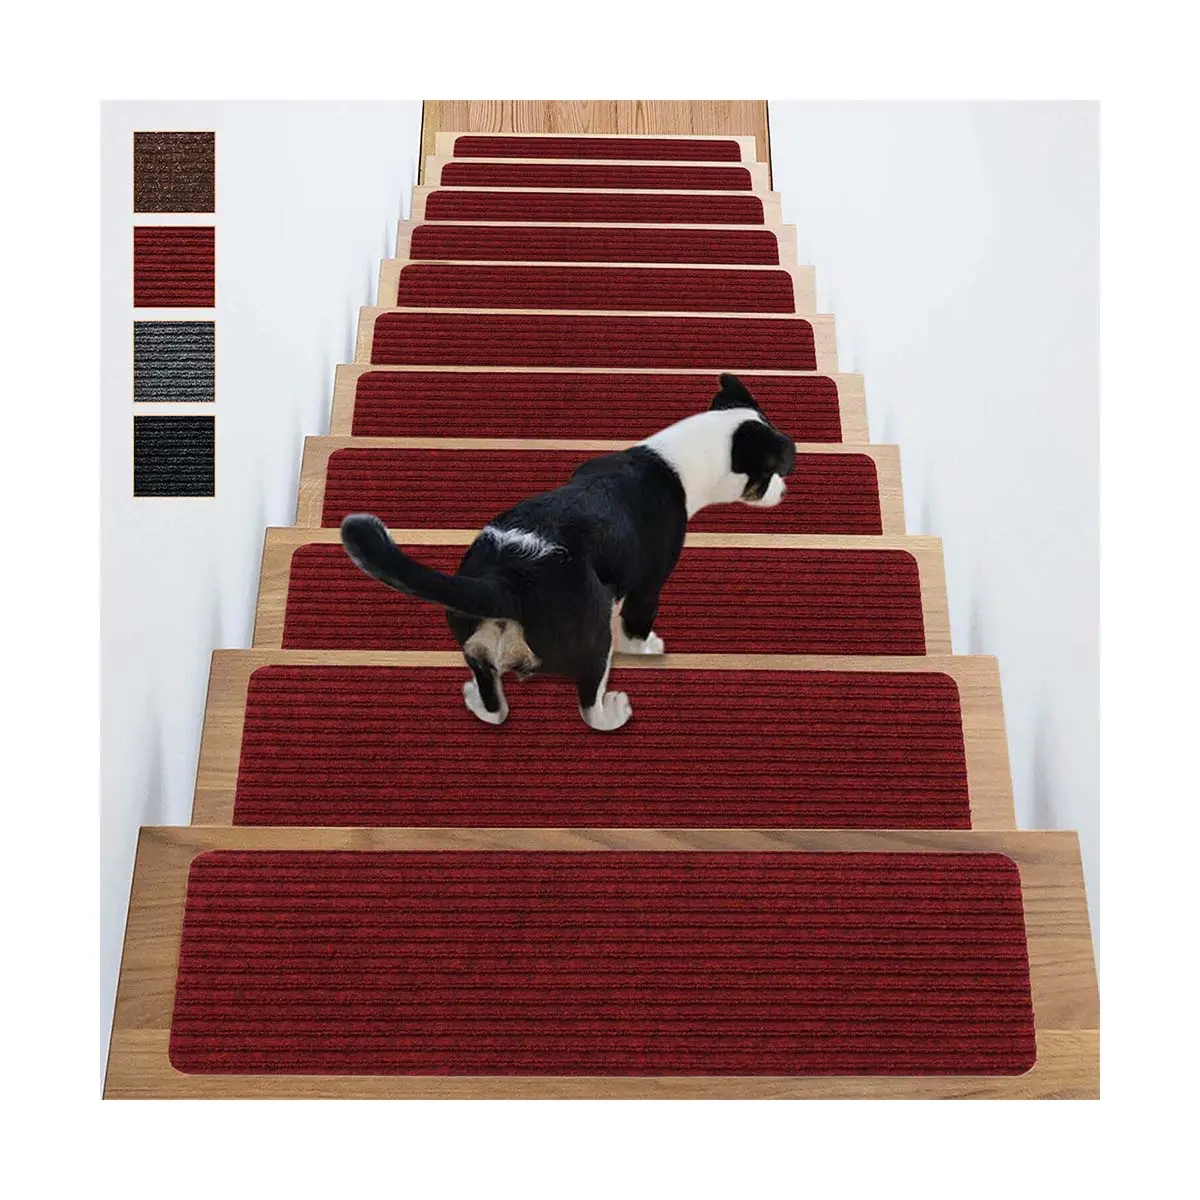 8 "x 30" Anti Moving Grip Treppen profil Teppich Treppen matten läufer für Holz stufen